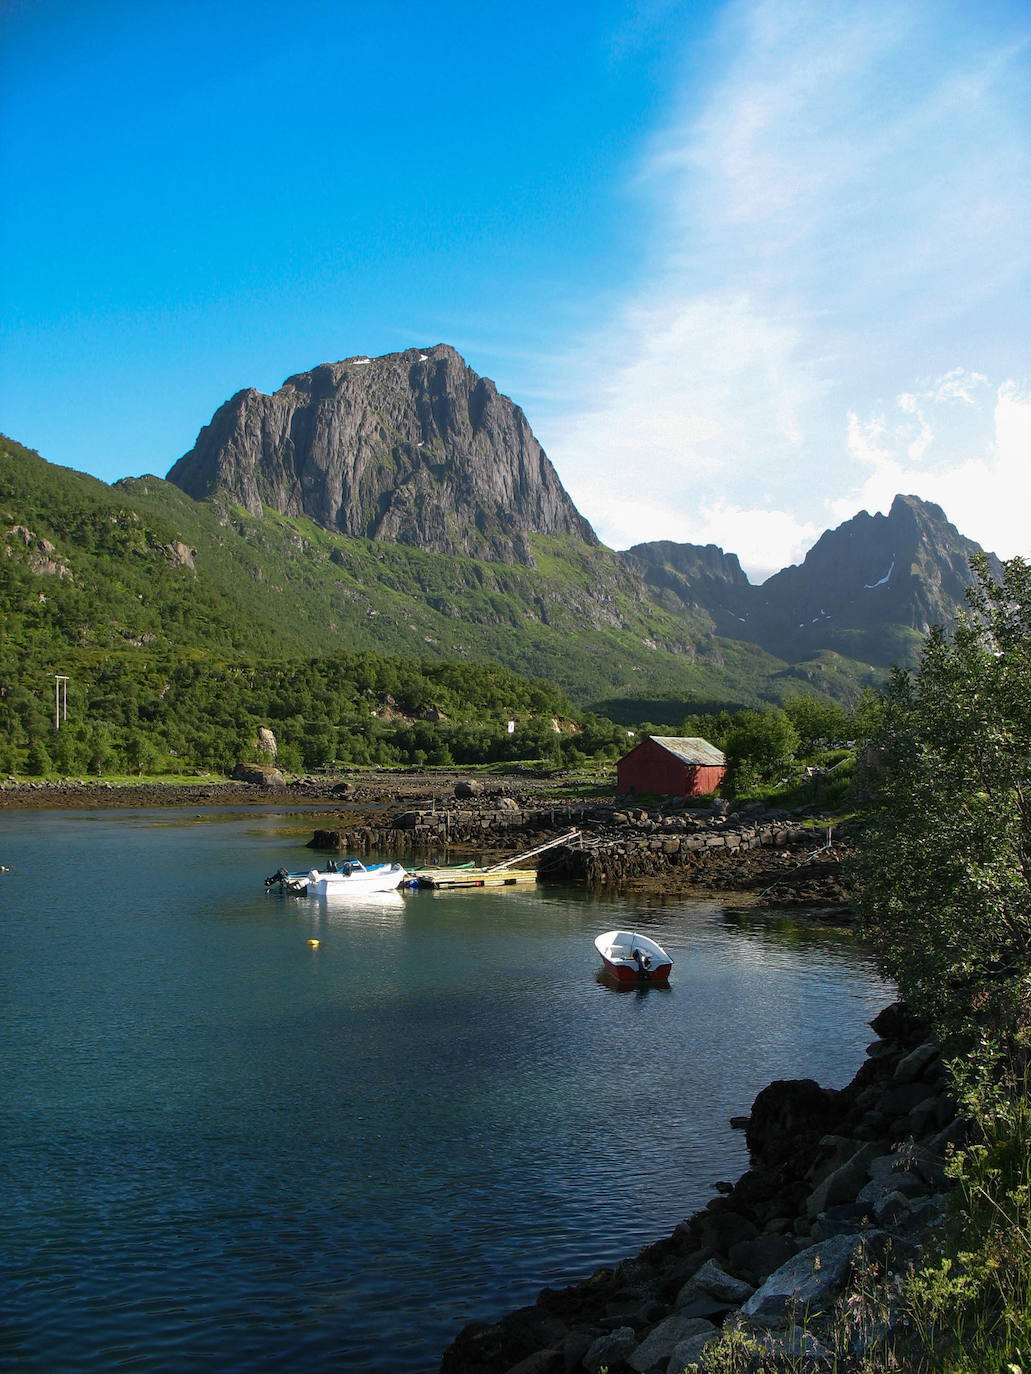 Fotos: El fascinante espectáculo natural de Noruega, el reino de los fiordos